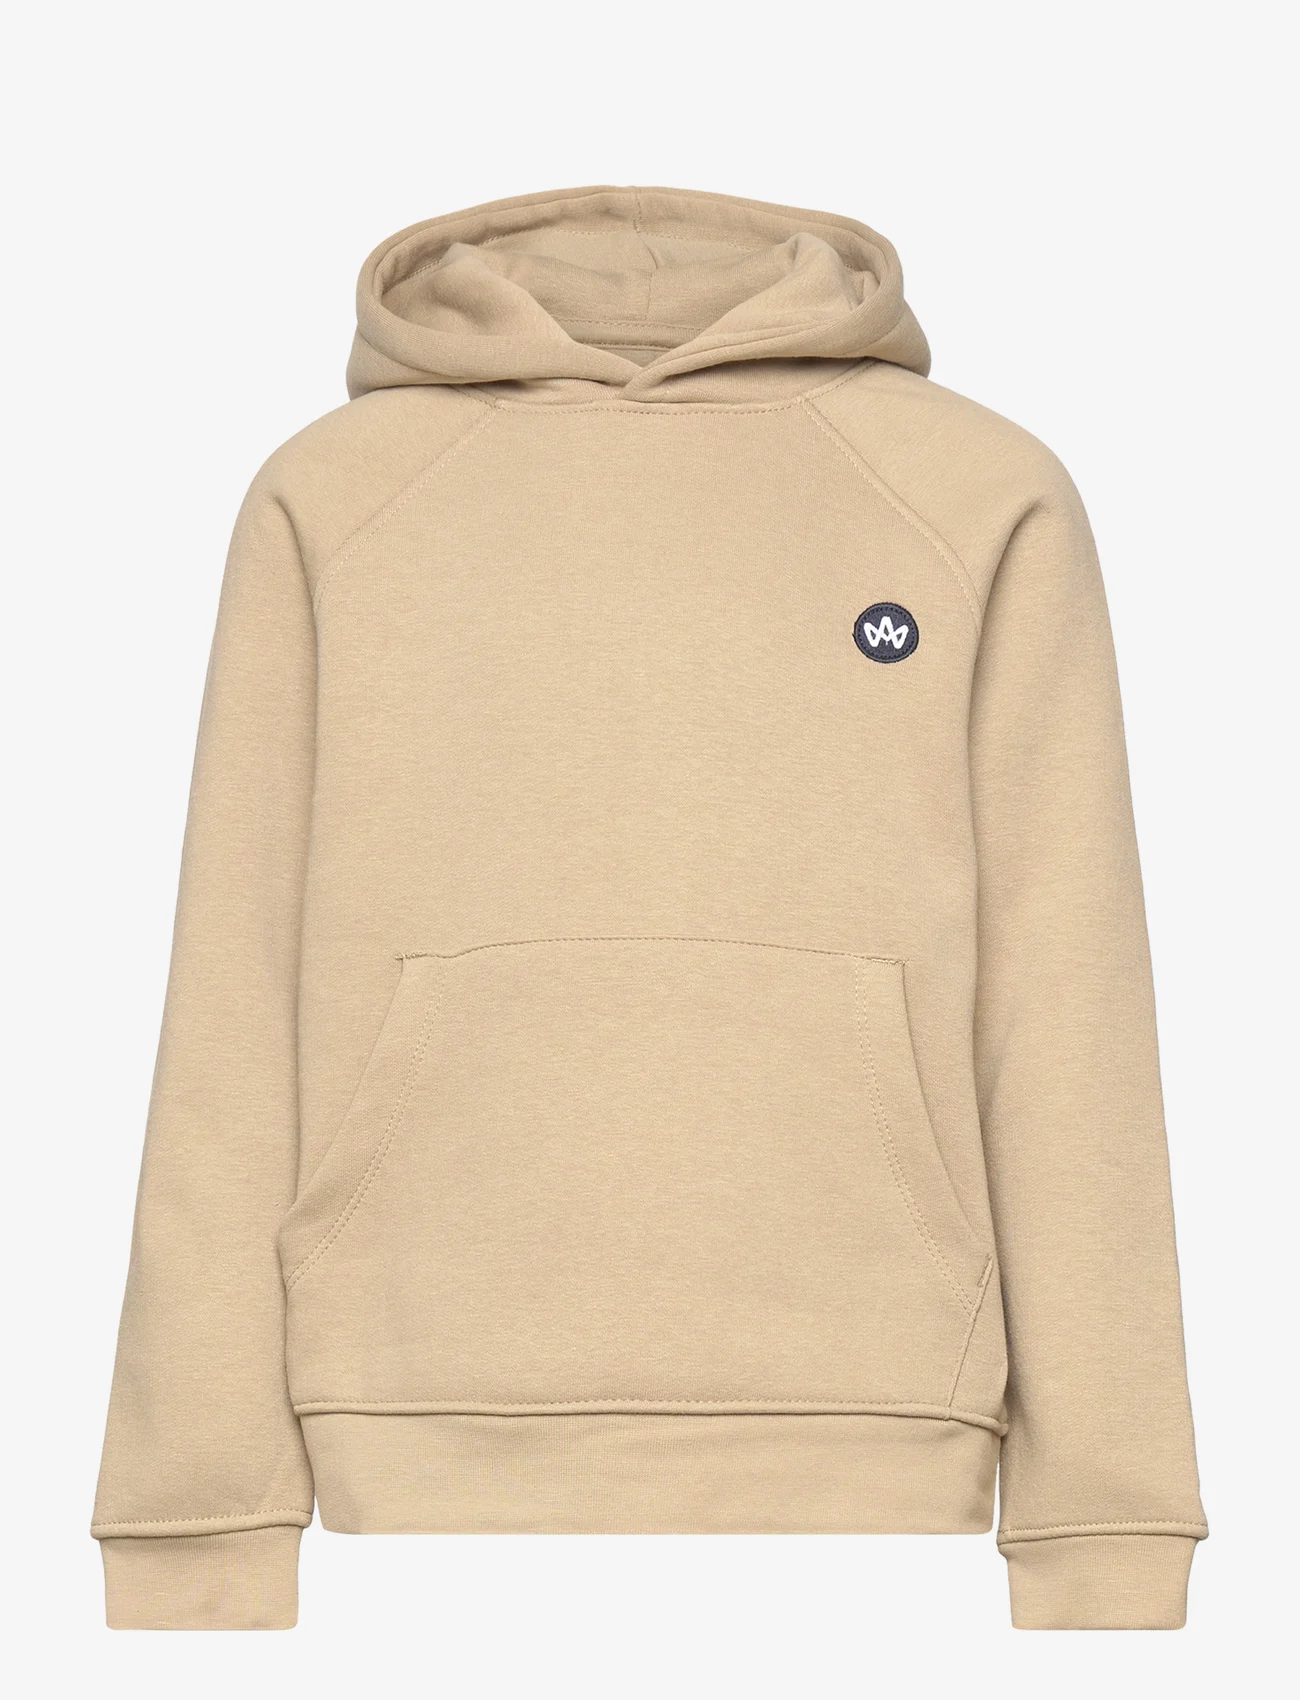 Kronstadt - Lars Kids Organic/Recycled hoodie - sweatshirts & hoodies - desert sand - 0